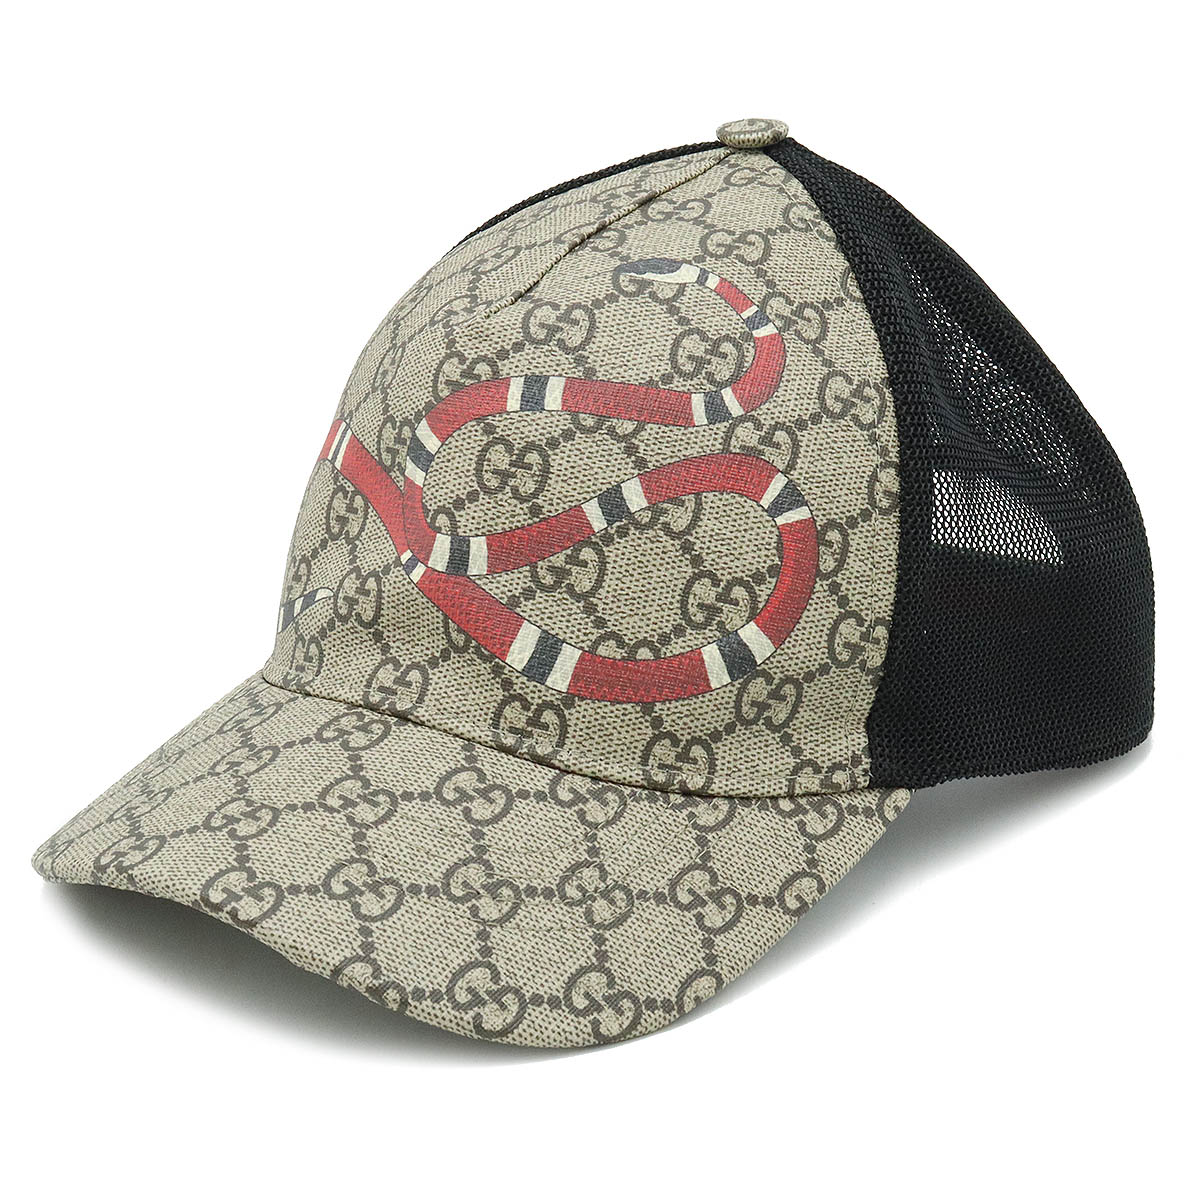 GGスプリーム ベースボール キャップ 帽子 スネーク 蛇 プリント カーキベージュ レッド 赤 ブラック 黒 #M 426887